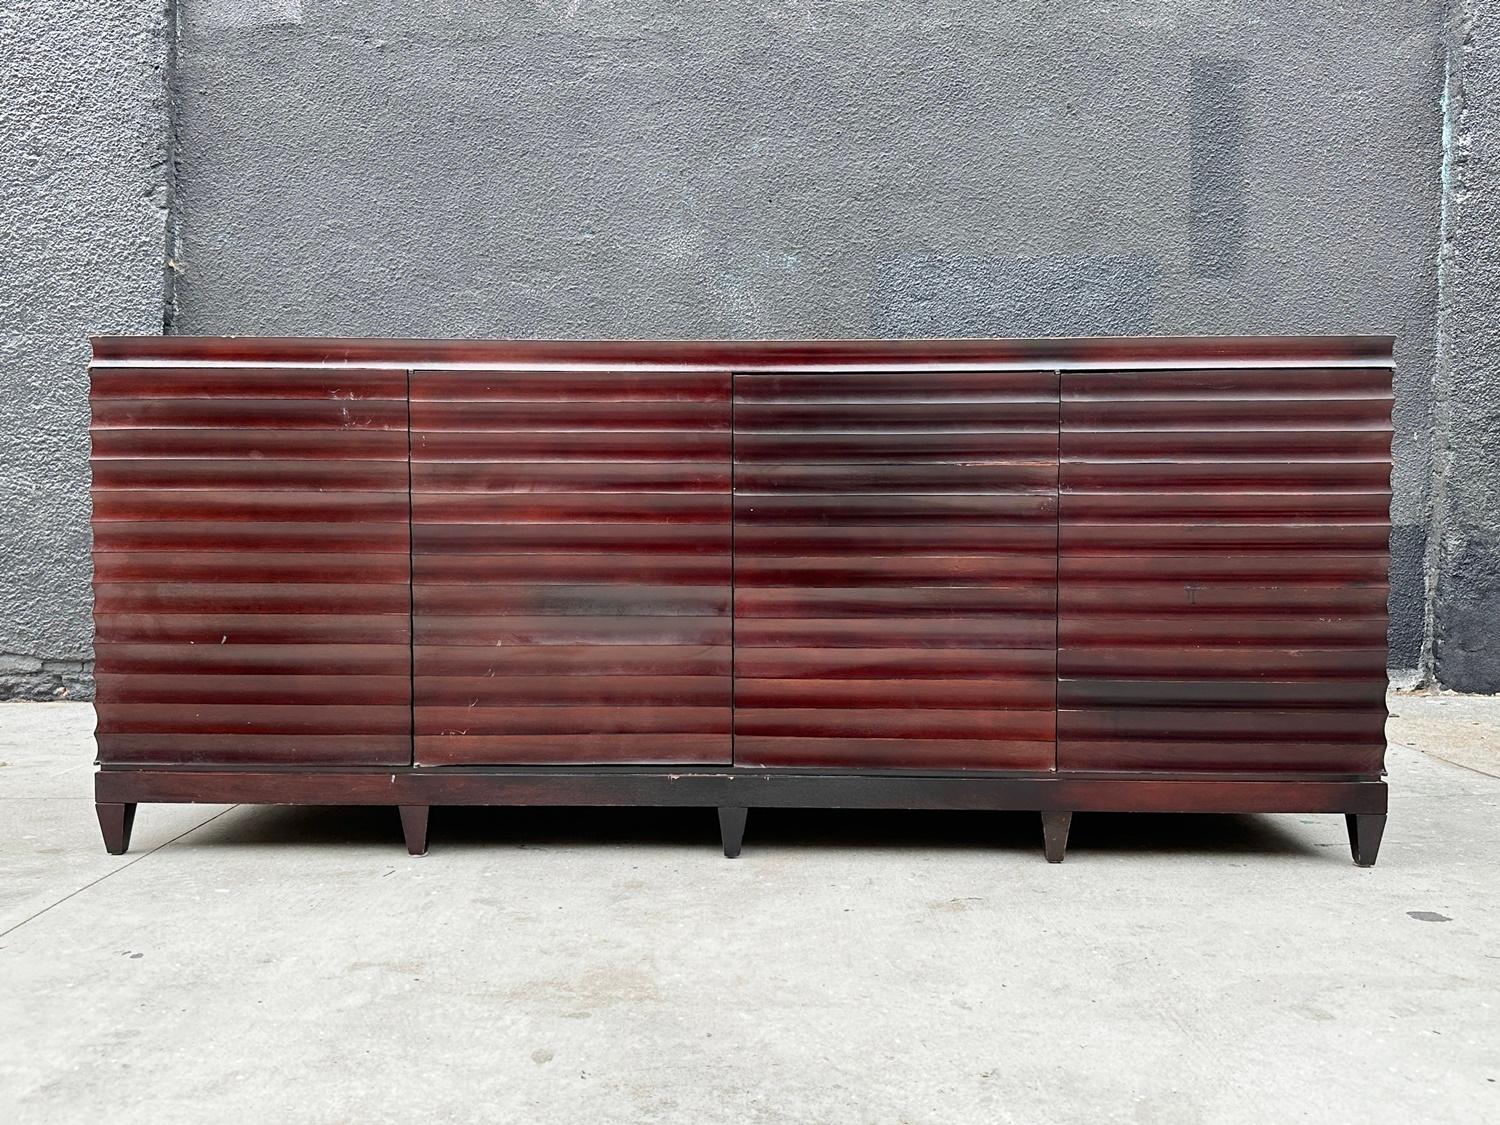 Der exquisite Modern Buffet Sideboard Cabinet von Barbara Barry, der 2010 exklusiv für Baker Furniture gefertigt wurde, wird vorgestellt. Diese tadellose Kreation zeigt die zeitlose Eleganz, die die Marke auszeichnet. Dieser imposante Schrank aus